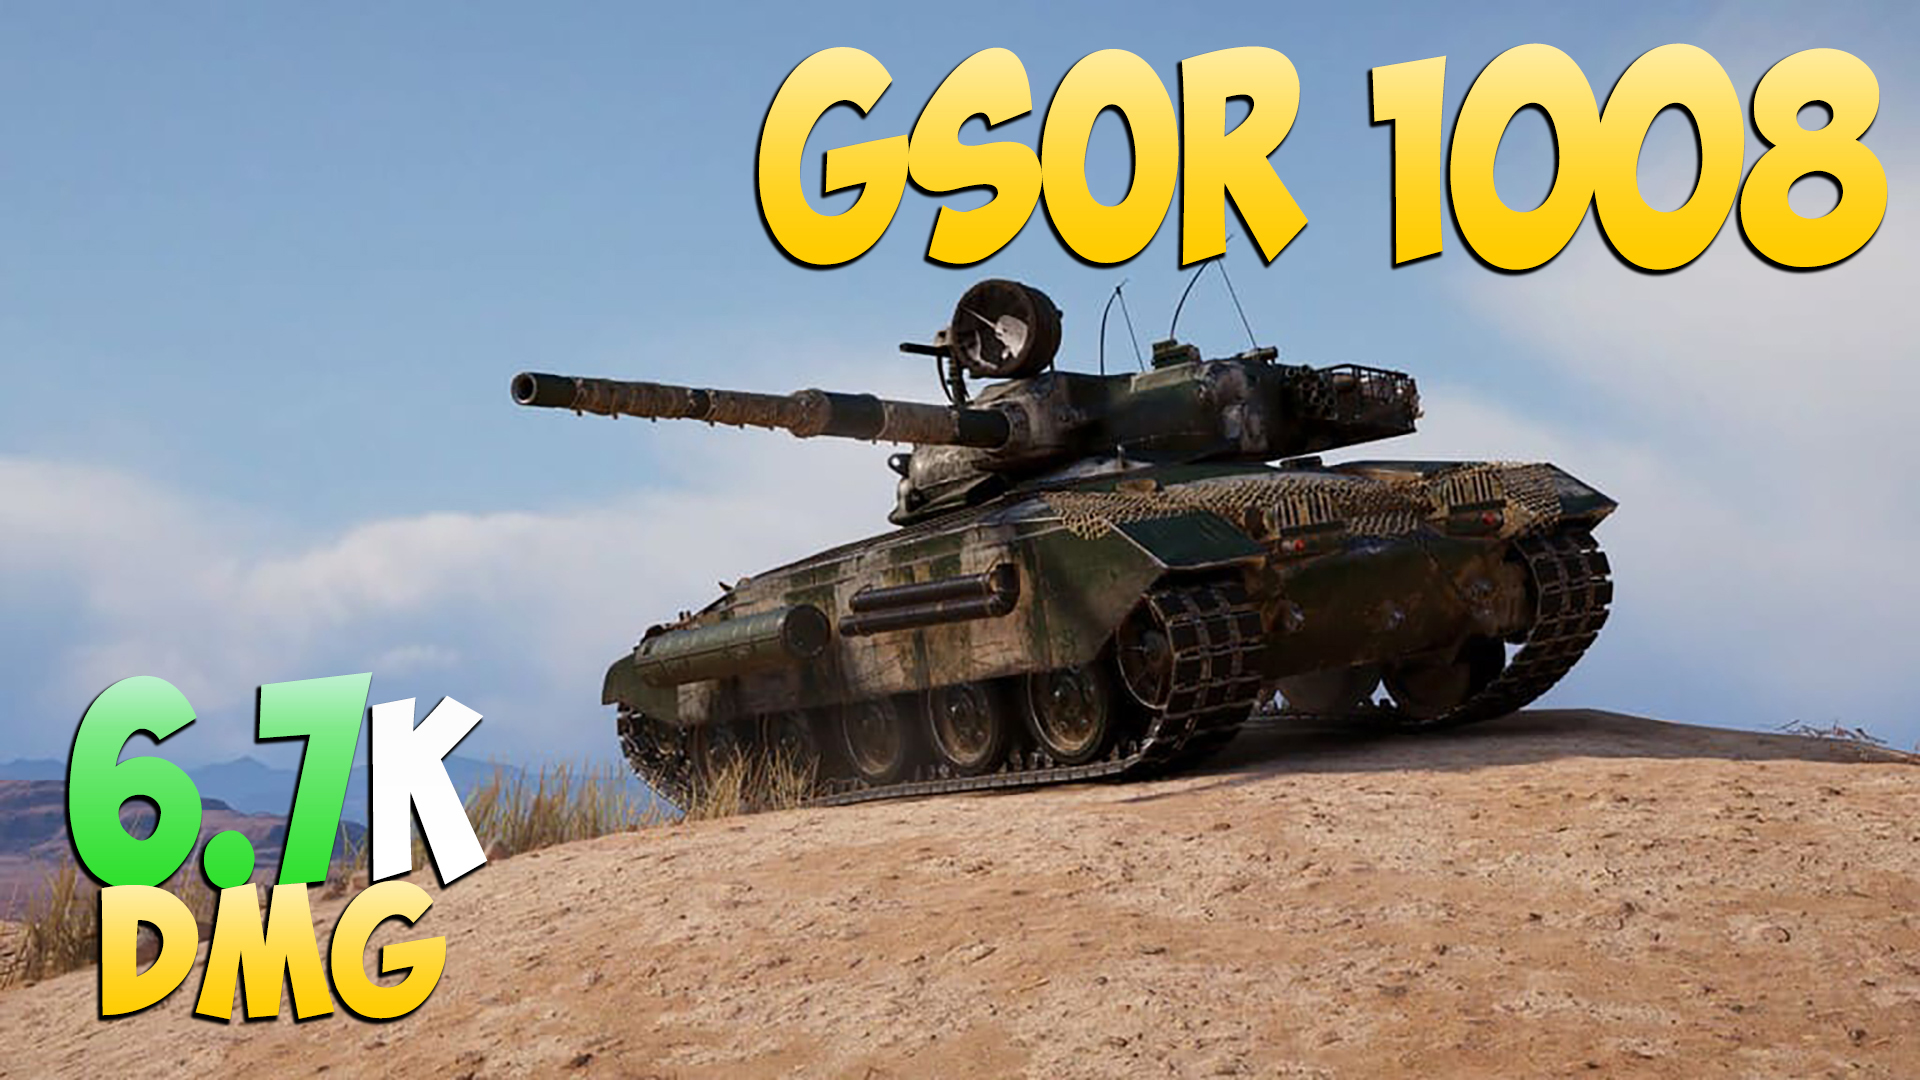 GSOR 1008 - 5 Фрагов 6.7K Урона - Естественный! - Мир Танков